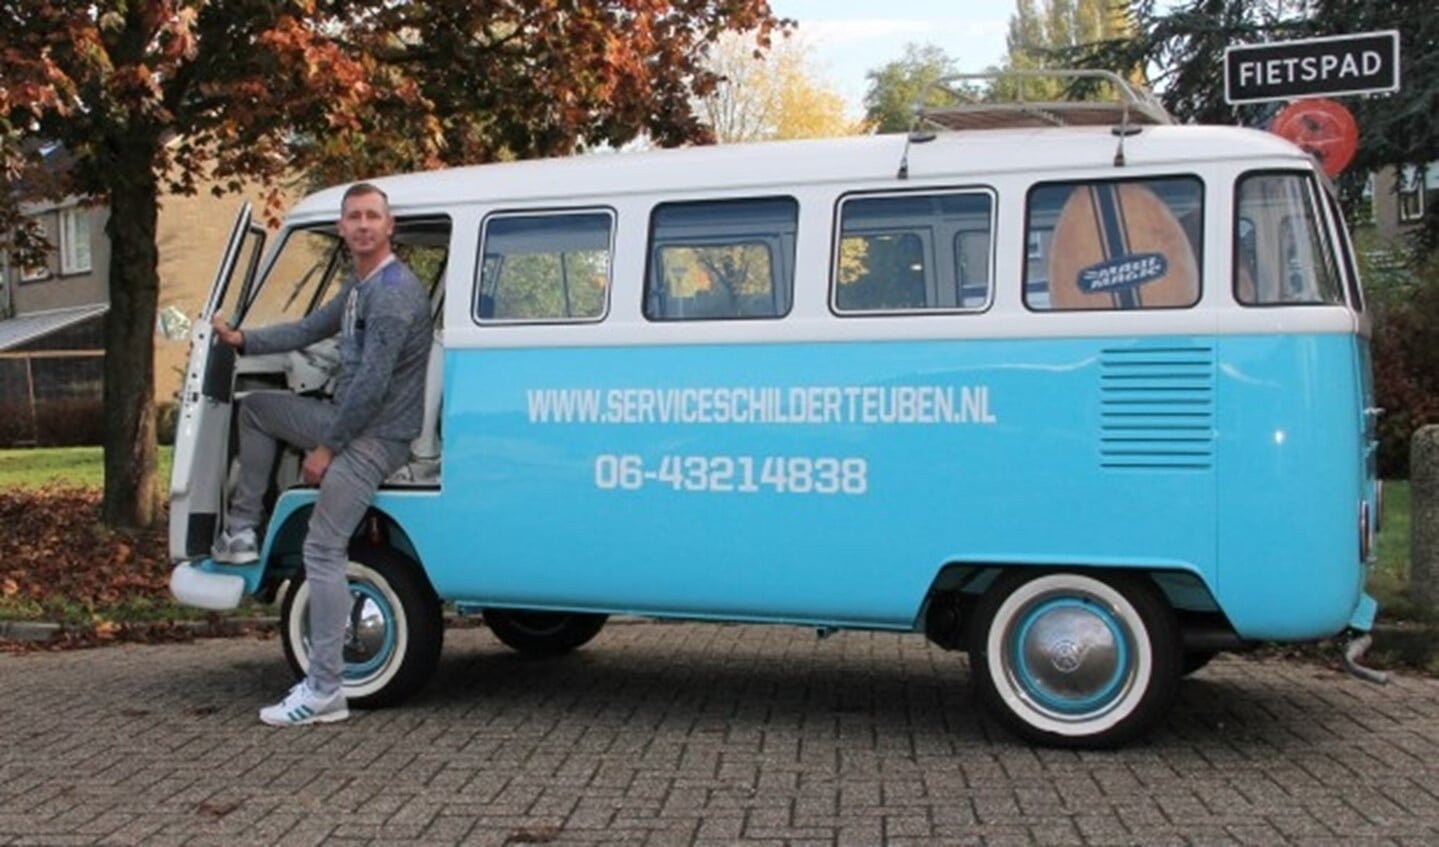 Guido Teuben bij zijn fraai opgeknapte de Volkswagenbus.